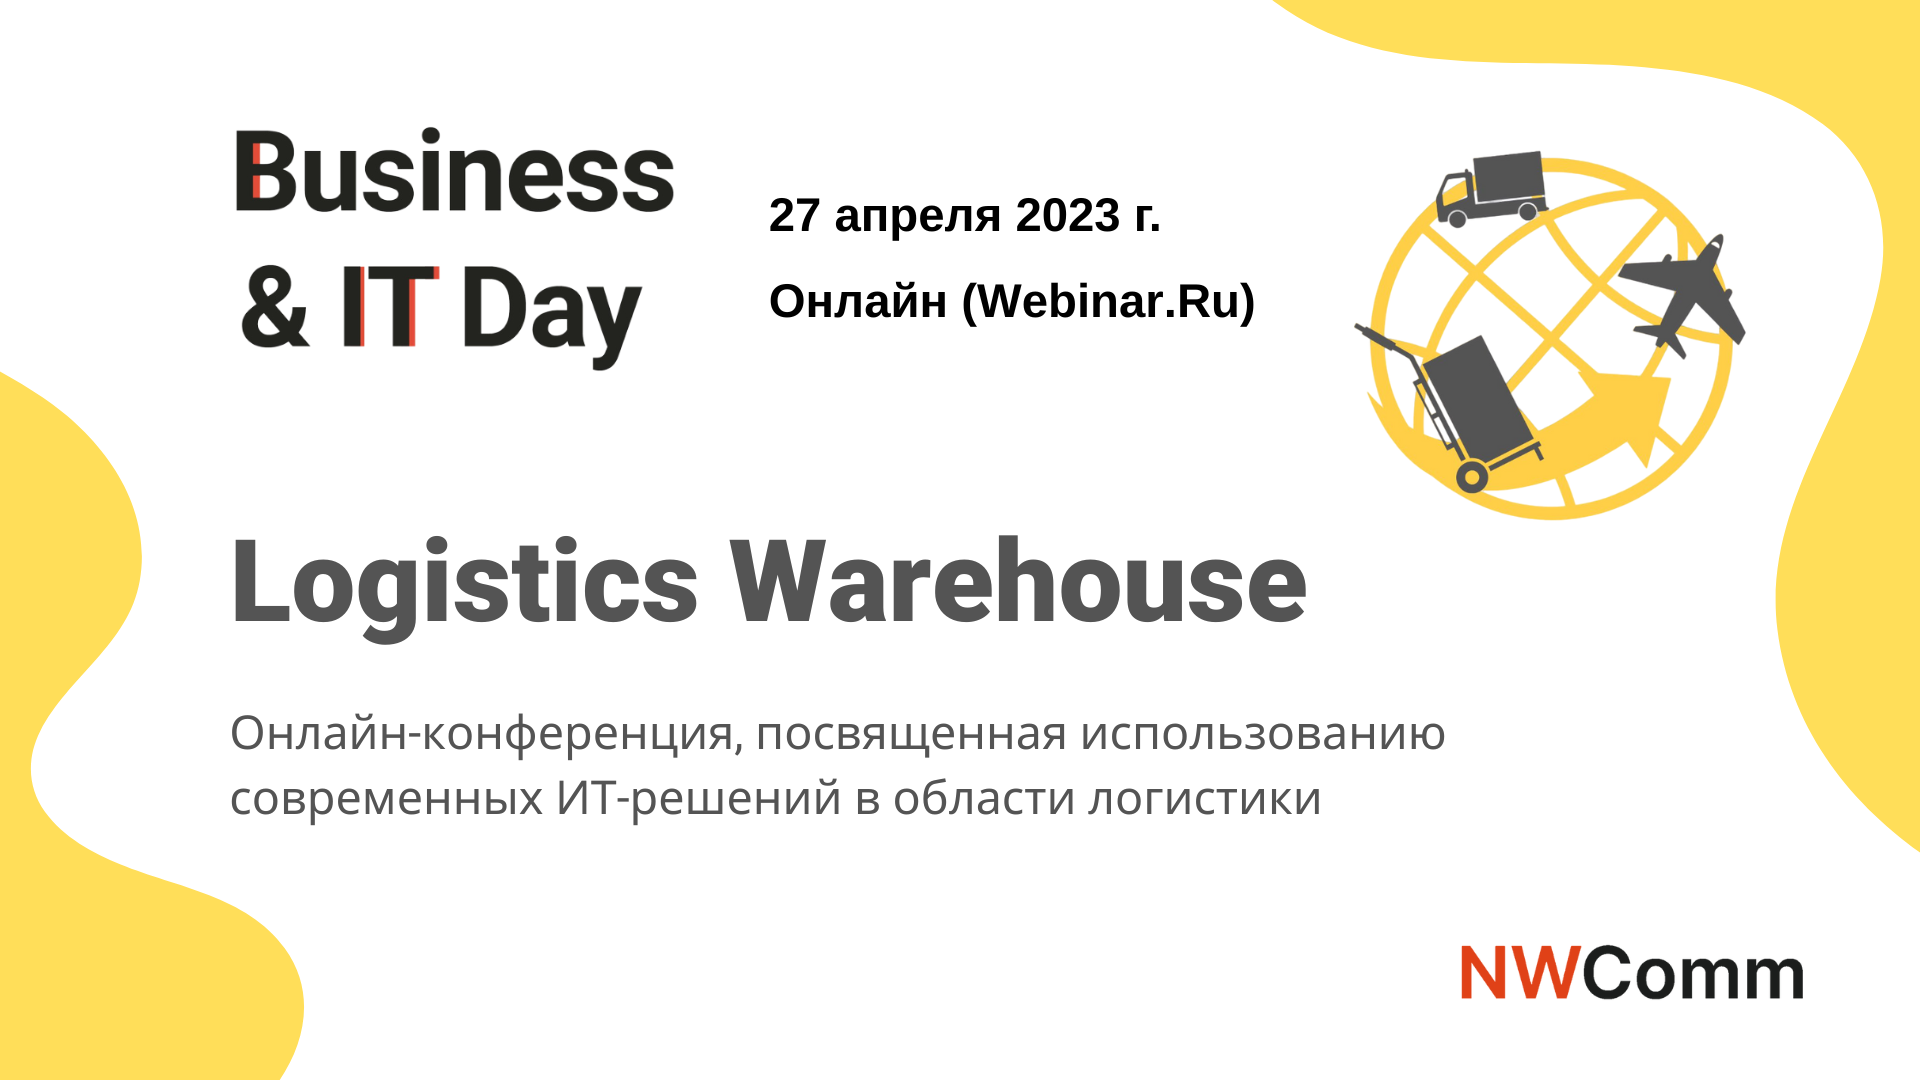 27 апреля 2023 г. в онлайн формате на платформе Webinar.ru пройдет Business&IT Day: Logistics Warehouse.